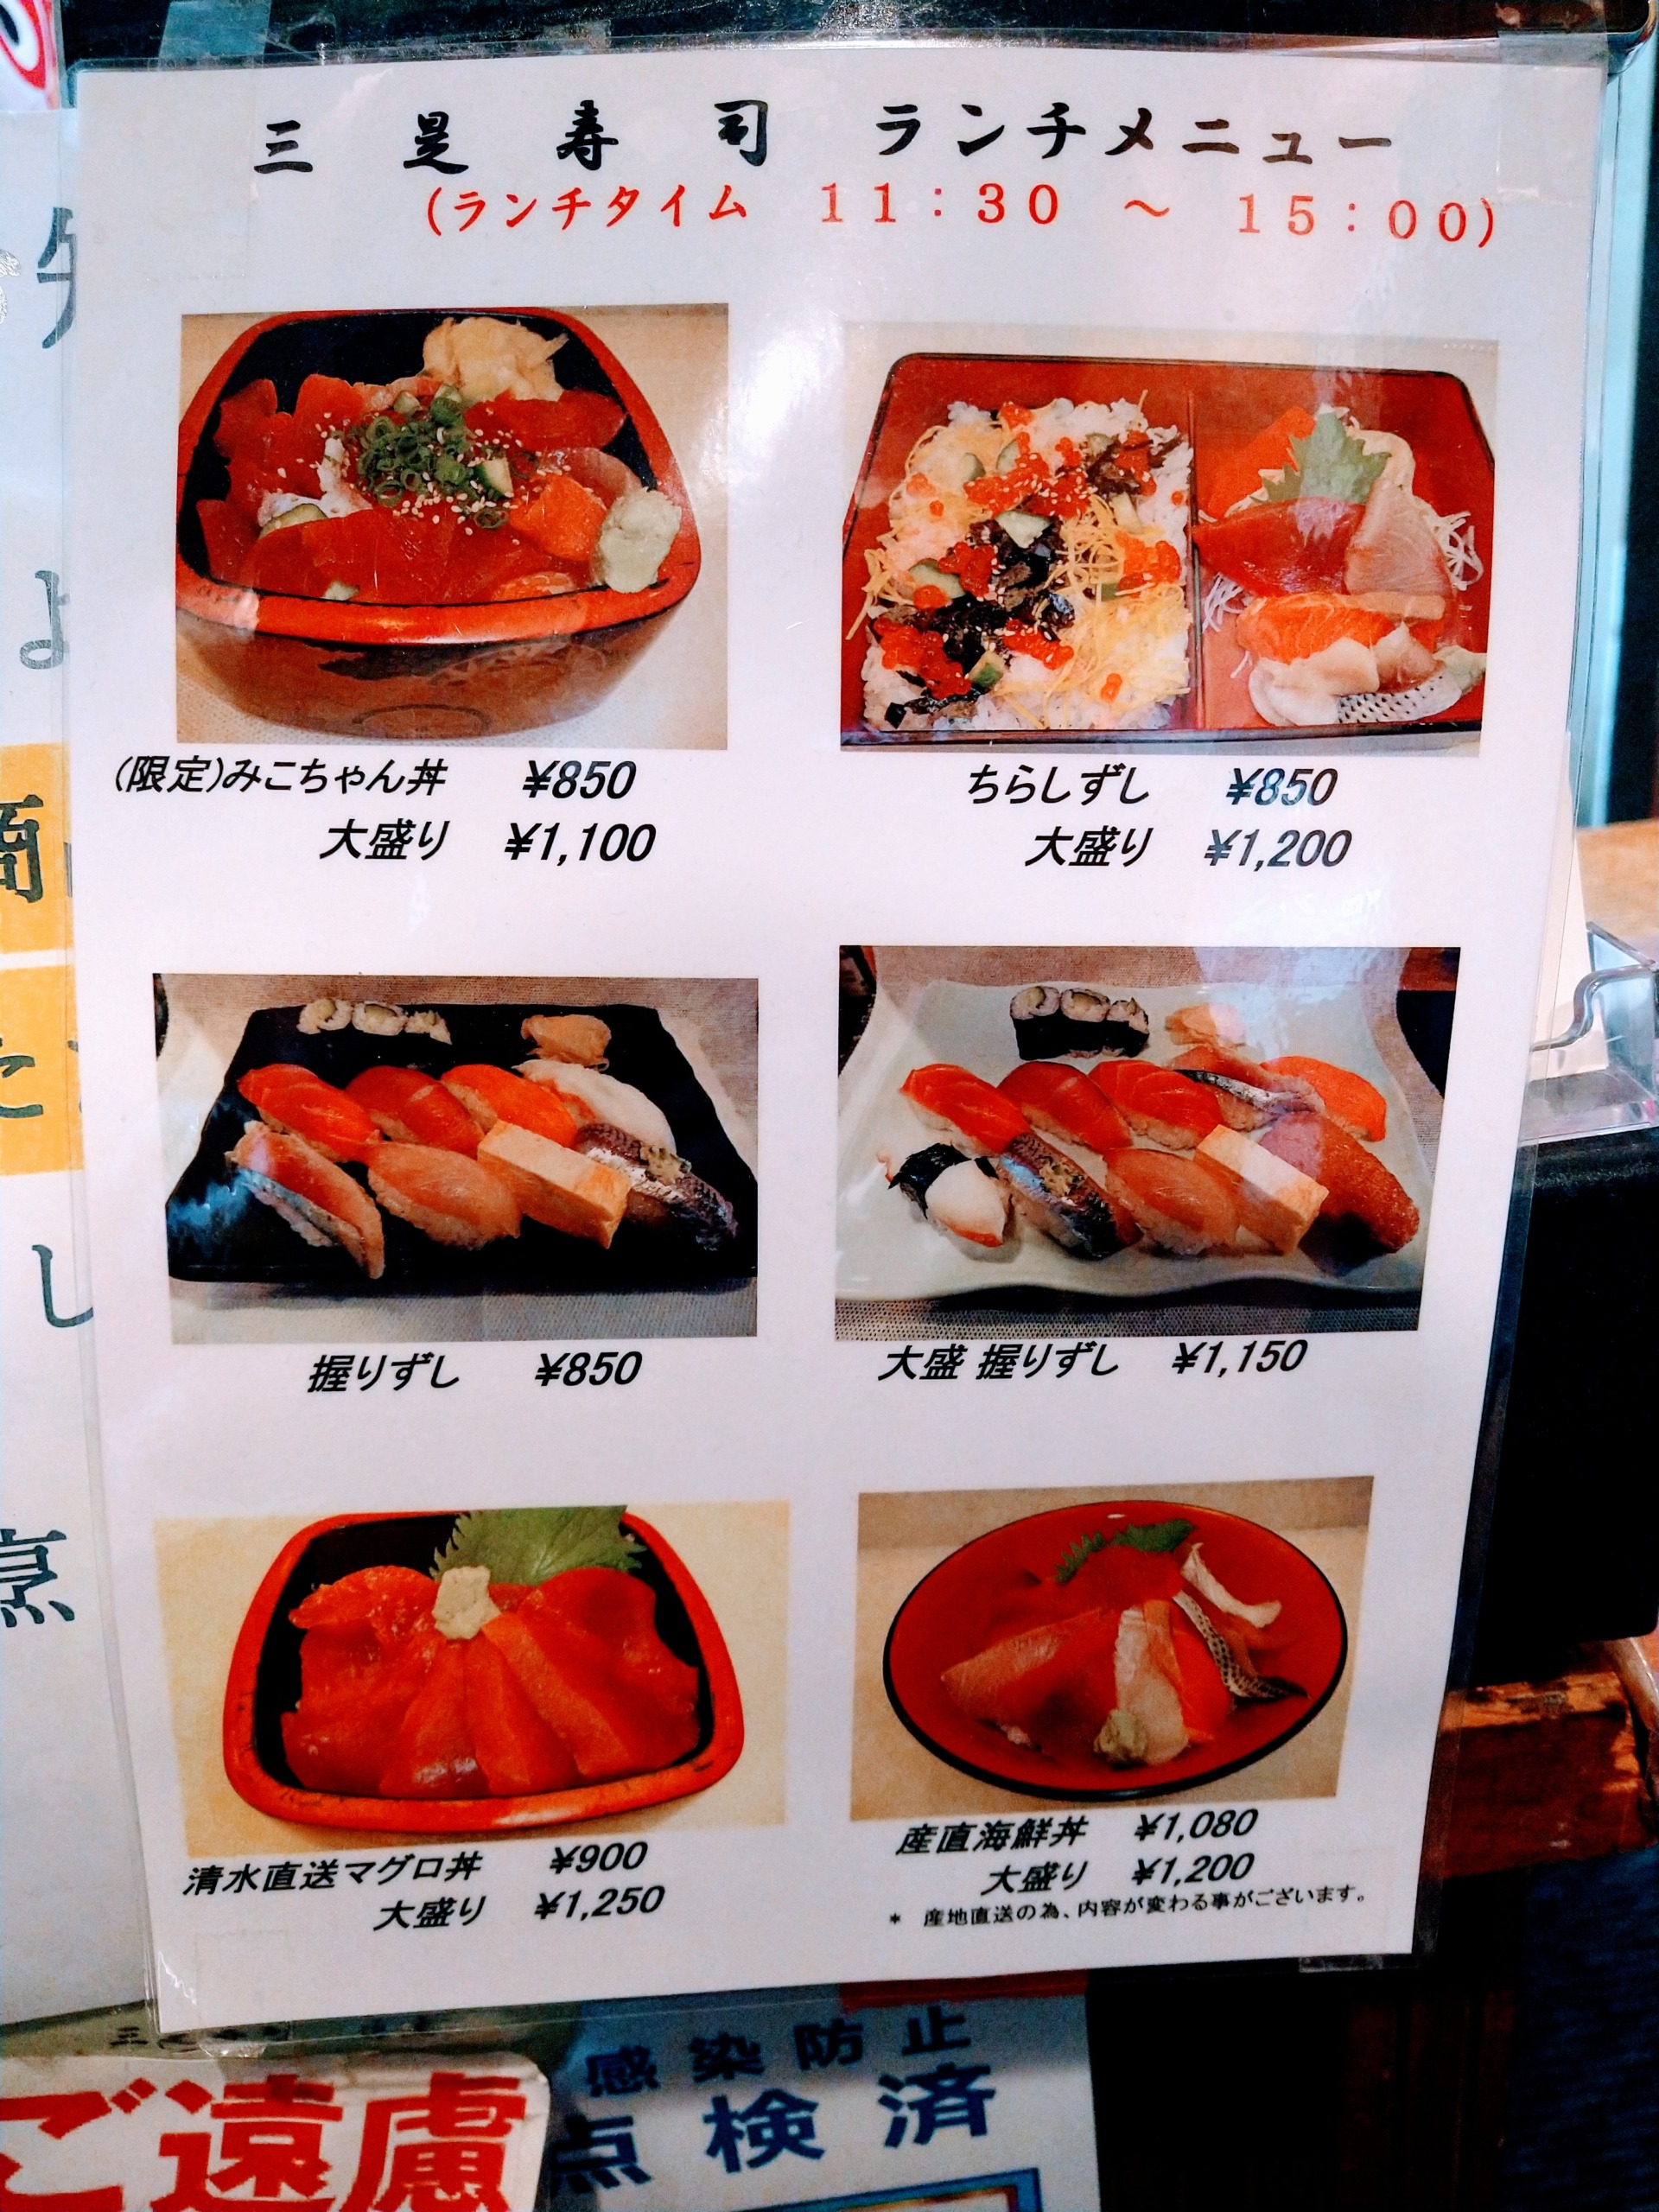 mikore-sushi-menu-06